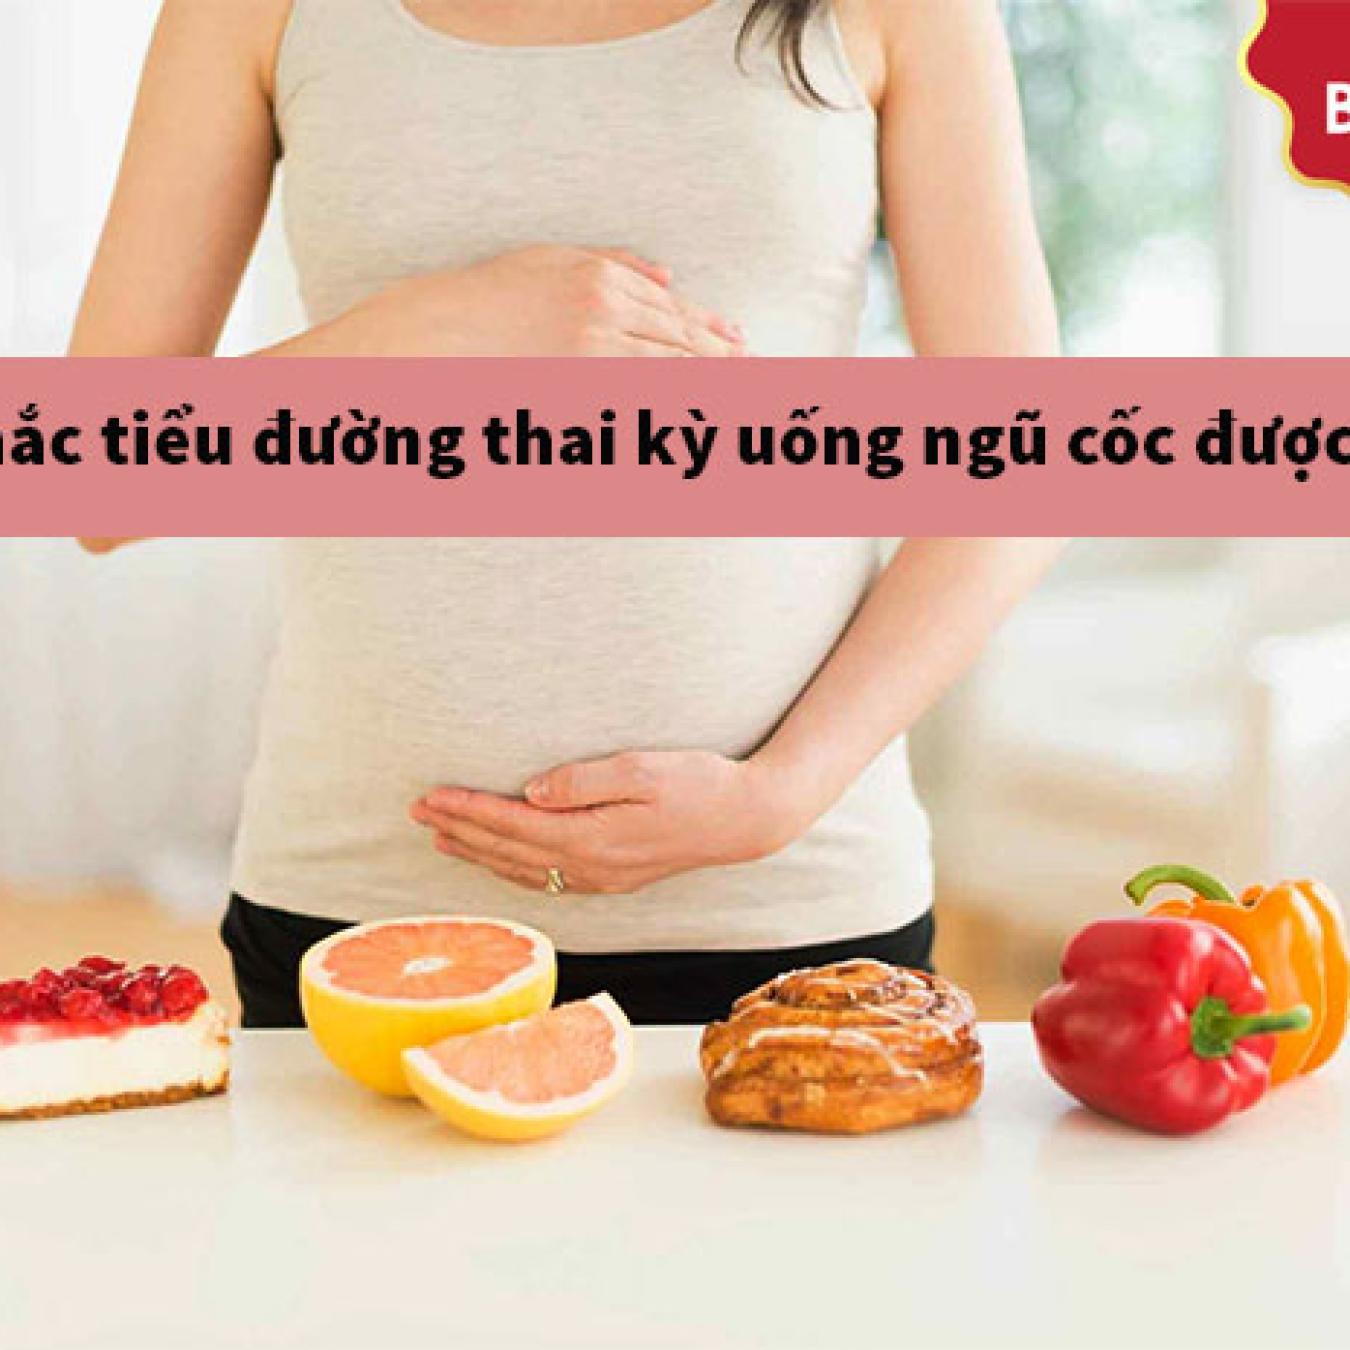 Giải đáp: Người mắc tiểu đường thai kỳ uống ngũ cốc được không?